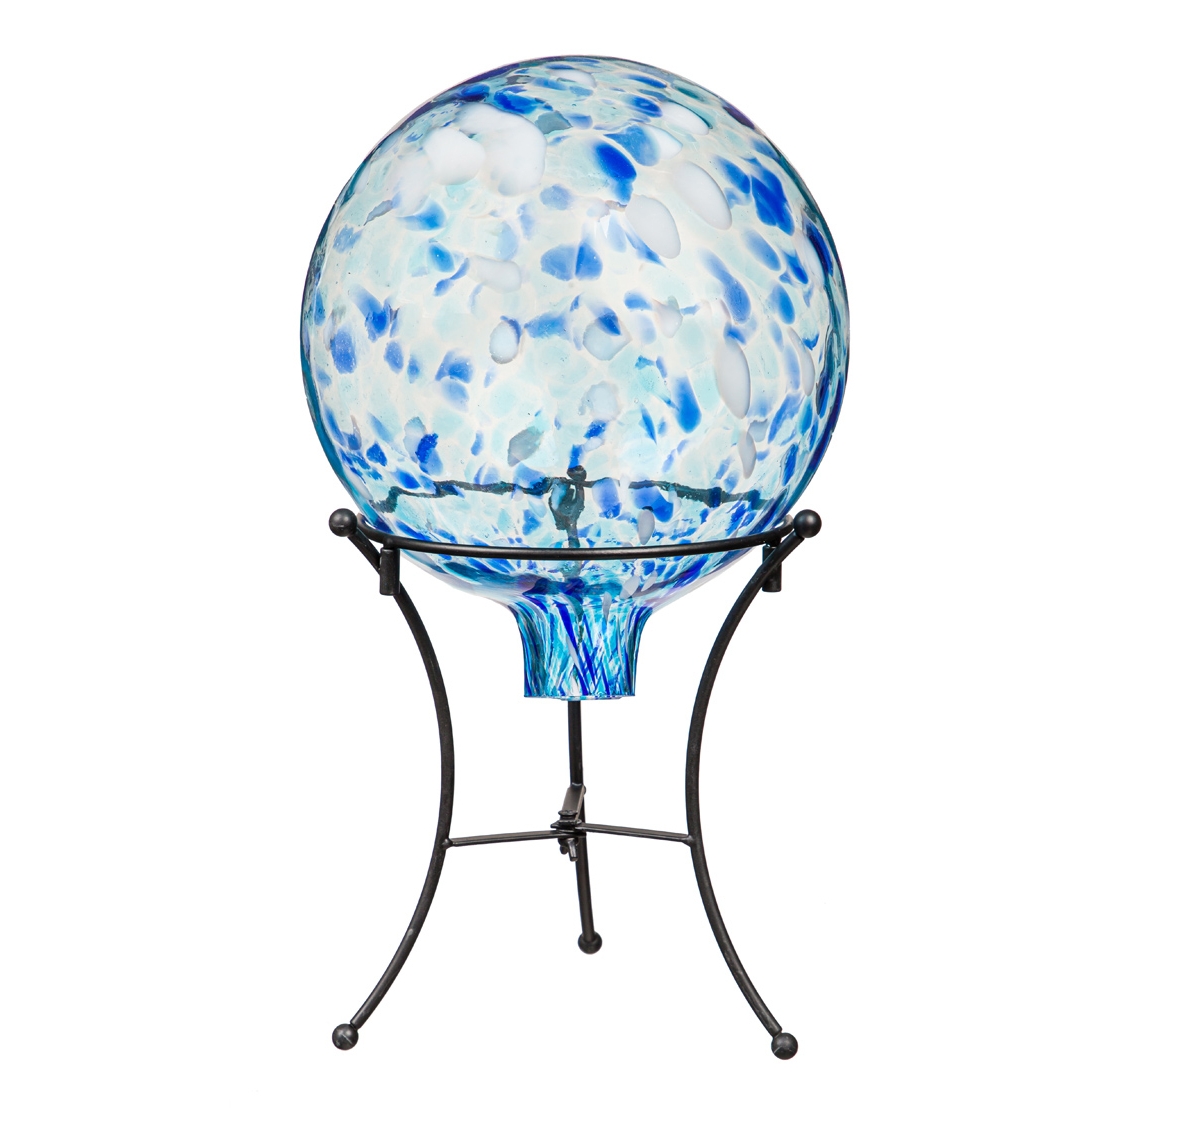 Evergreen 10" Art Glass Aqua Confetti Gazing Ball With Stand Garden And Yard Decor In Multicolored